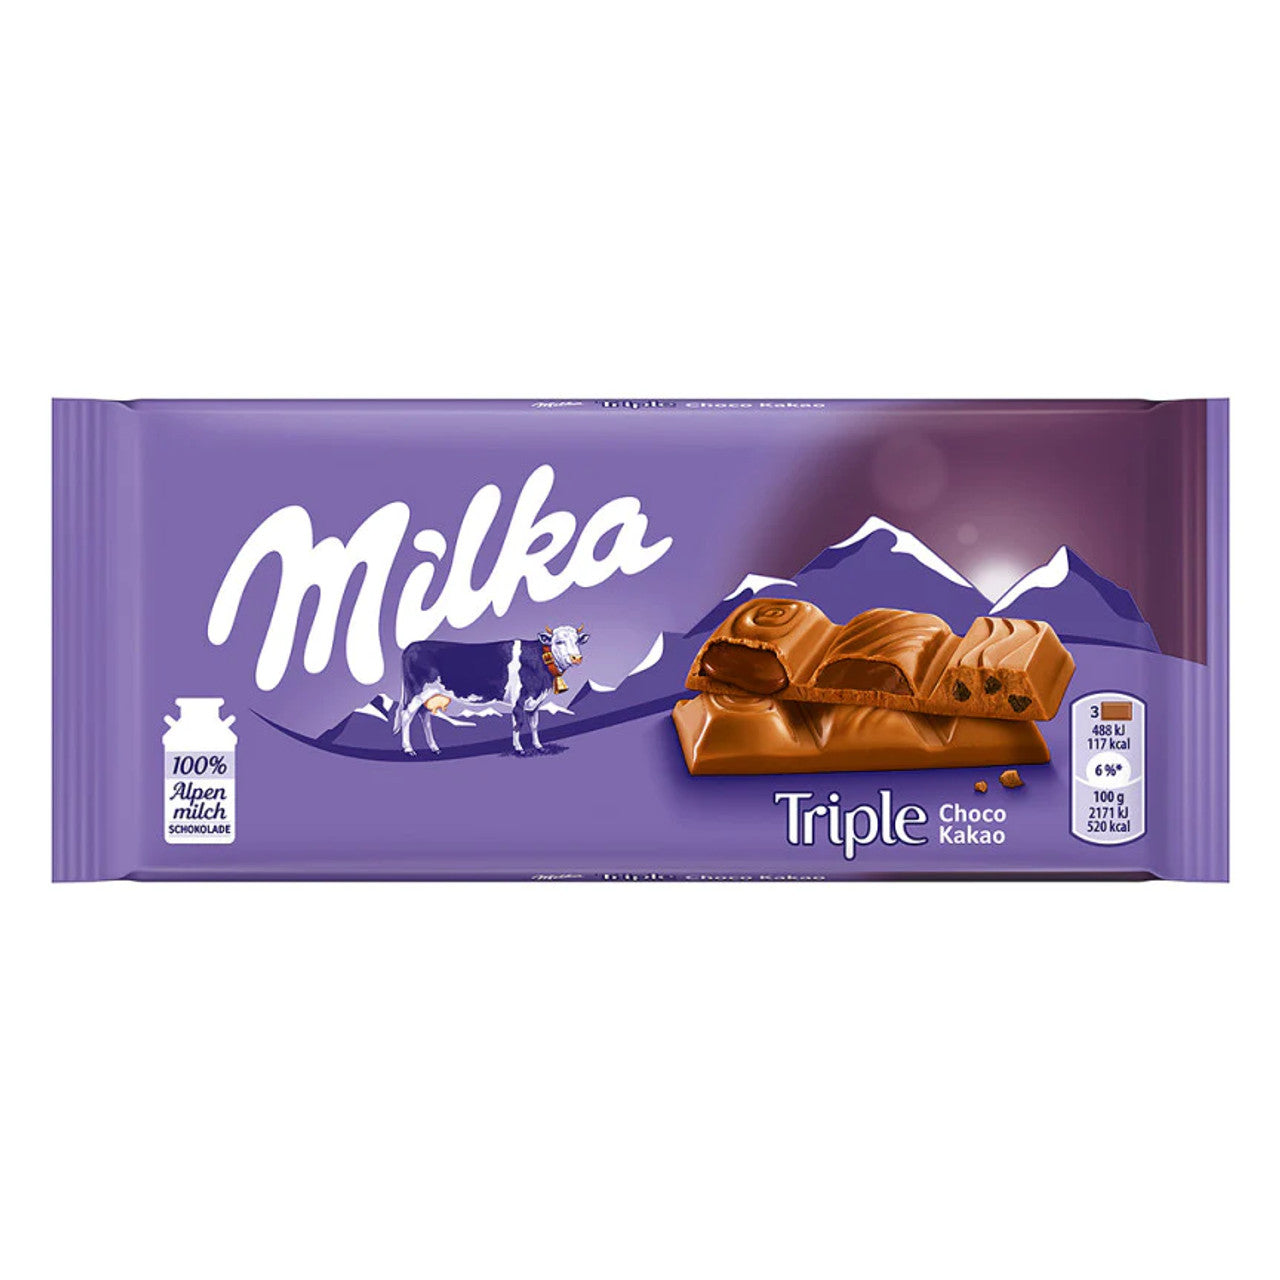 Milka Triple Choco Kakao (Germany)